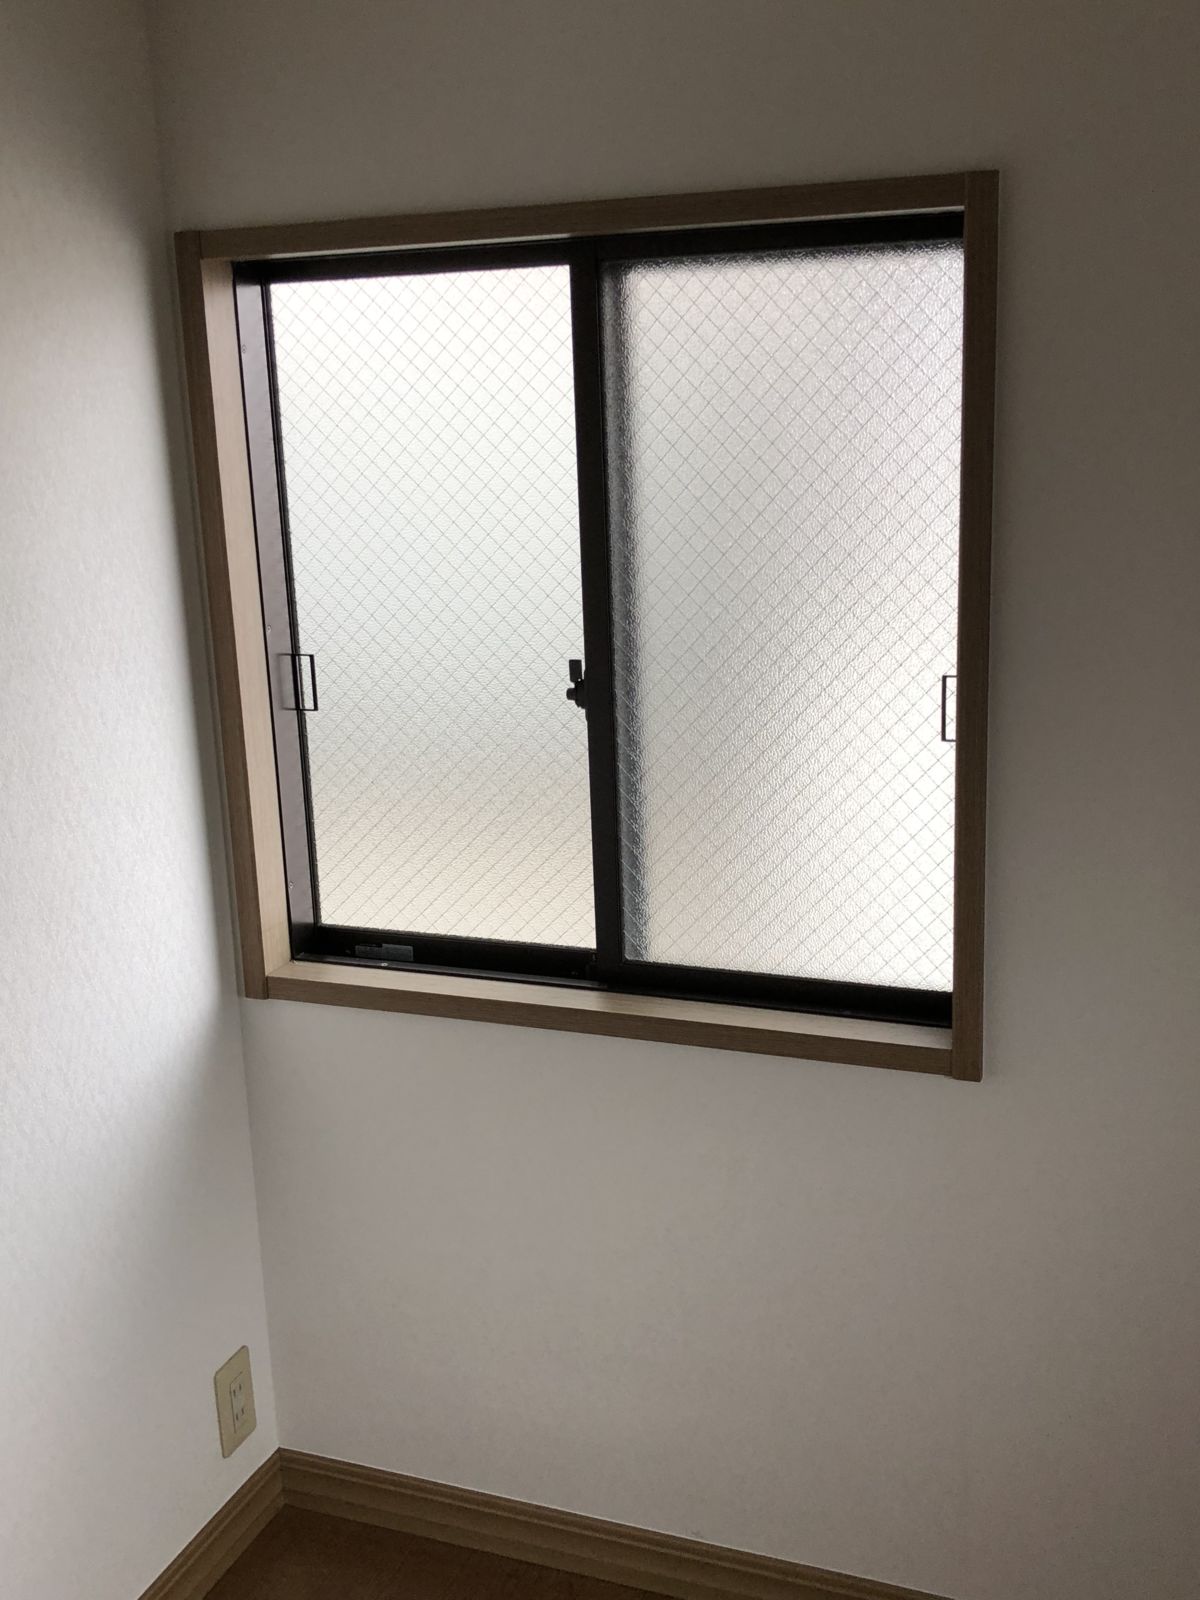 2階の窓の高さが床から70cmしかなく落下防止の手すりを付ける事となりました。 鈴直